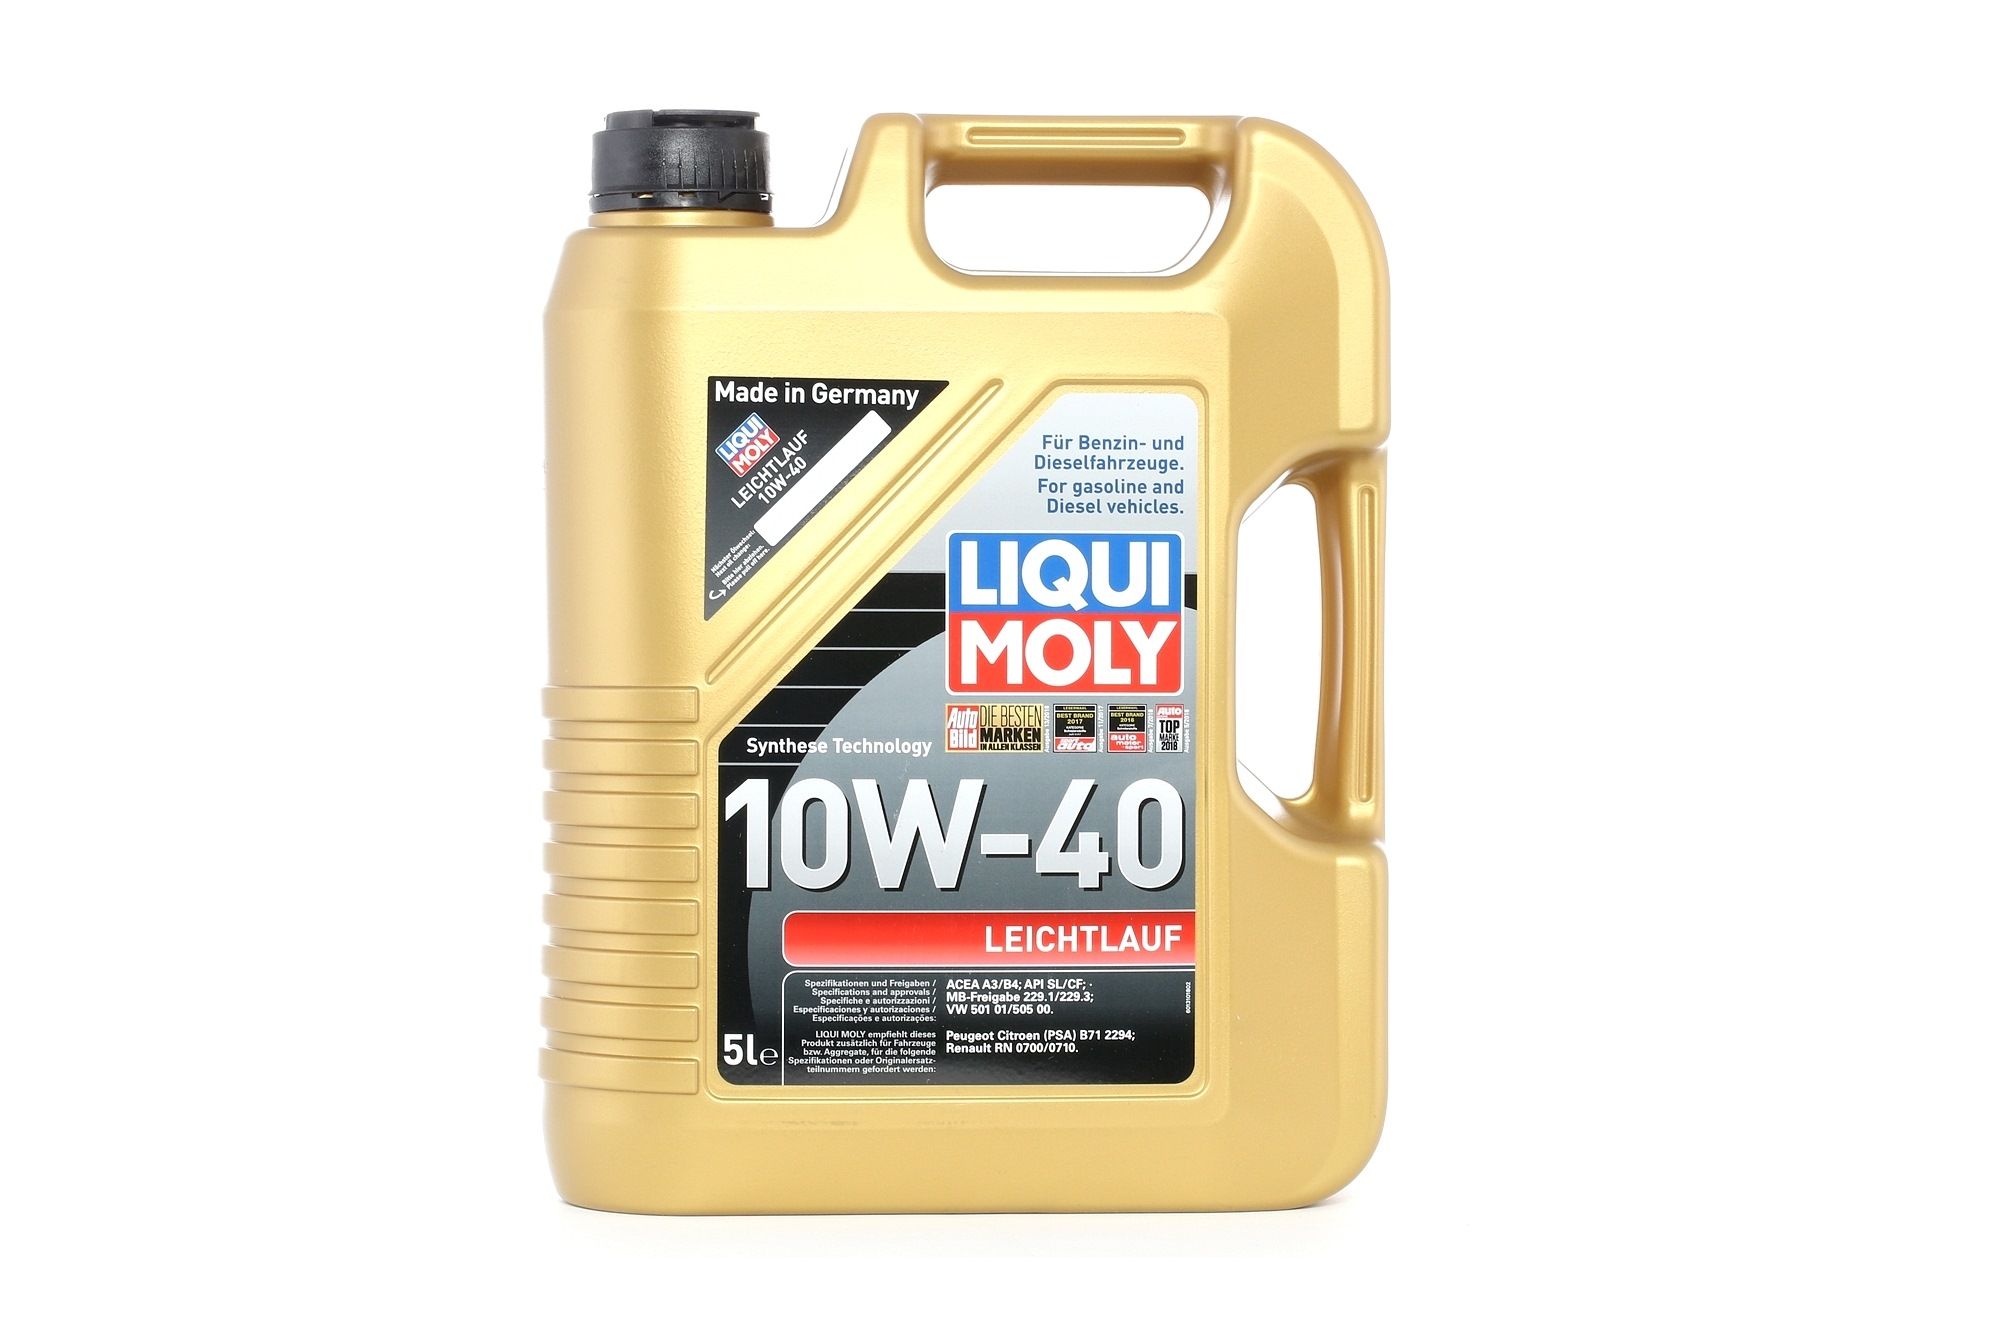 Liqui Moly Leichtlauf 10W-40 Motoröl , 5 Liter